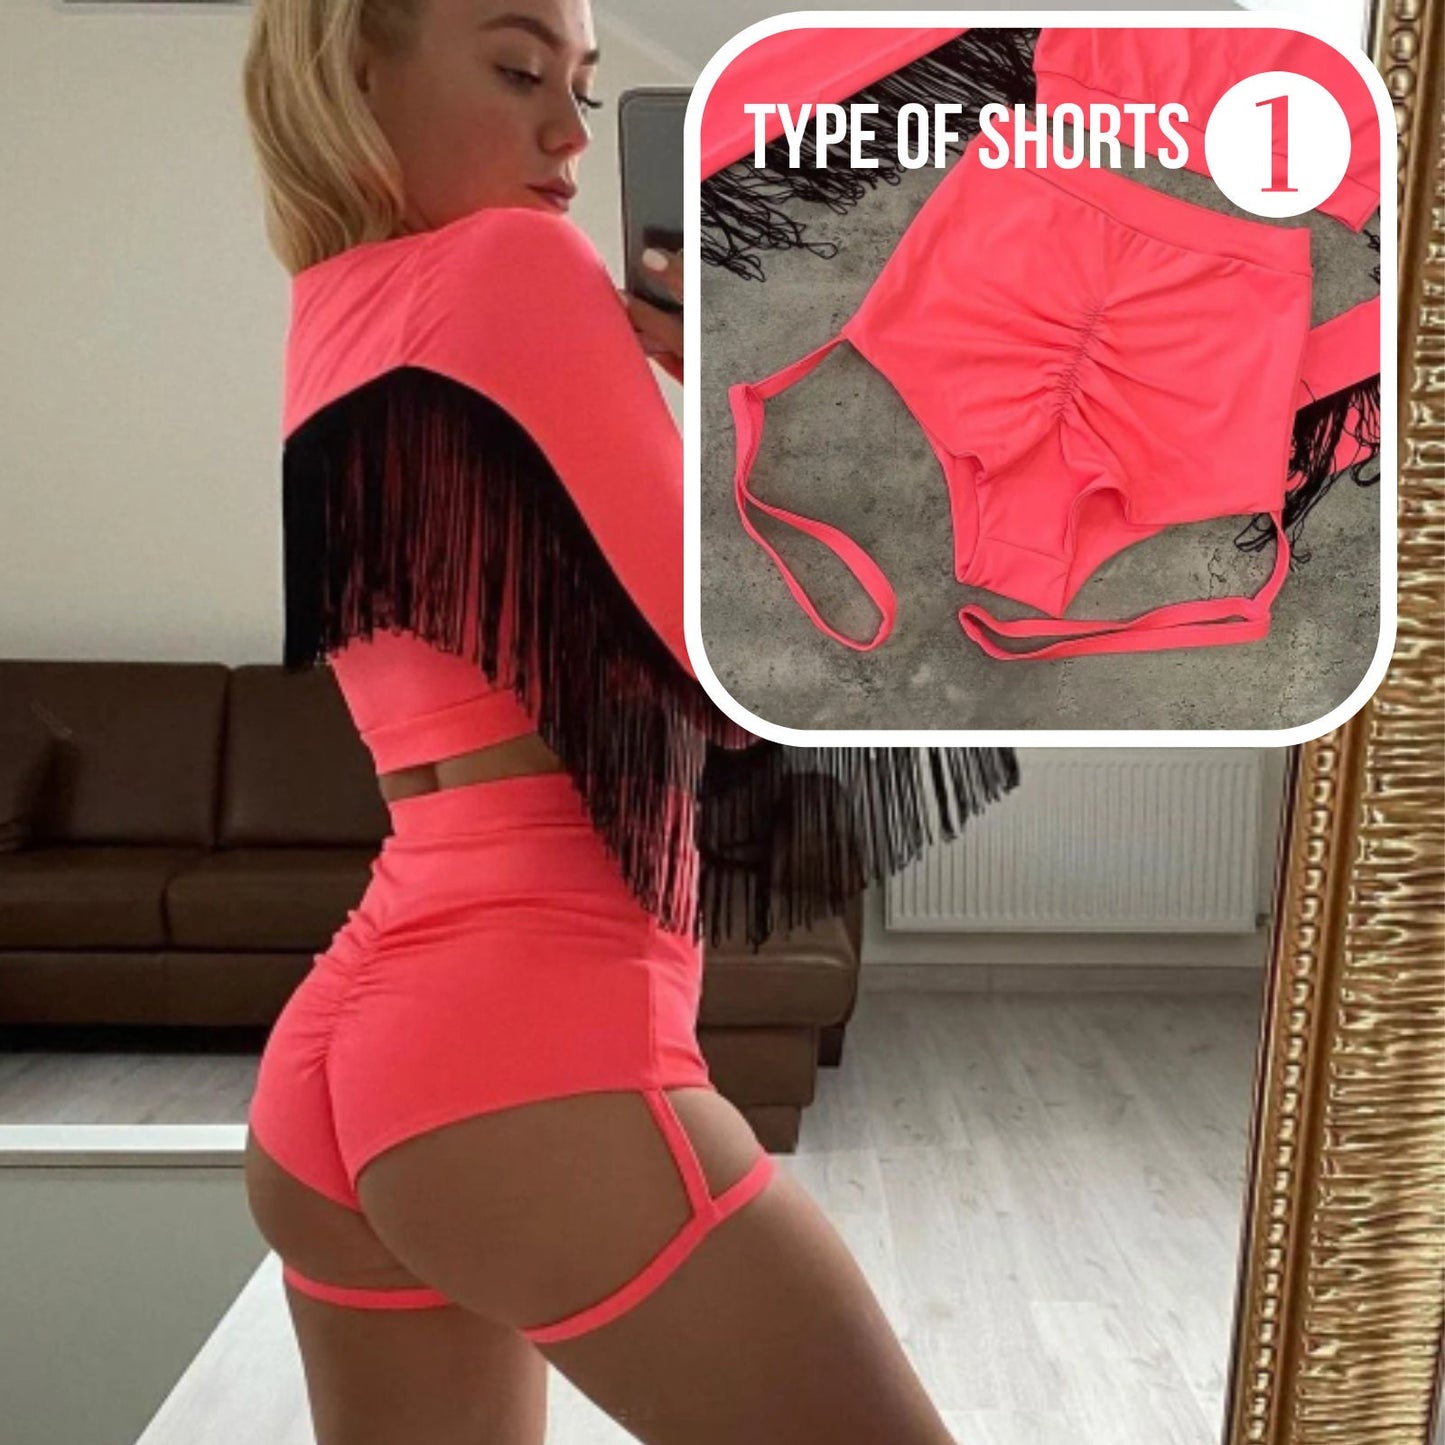 Shorts type 1